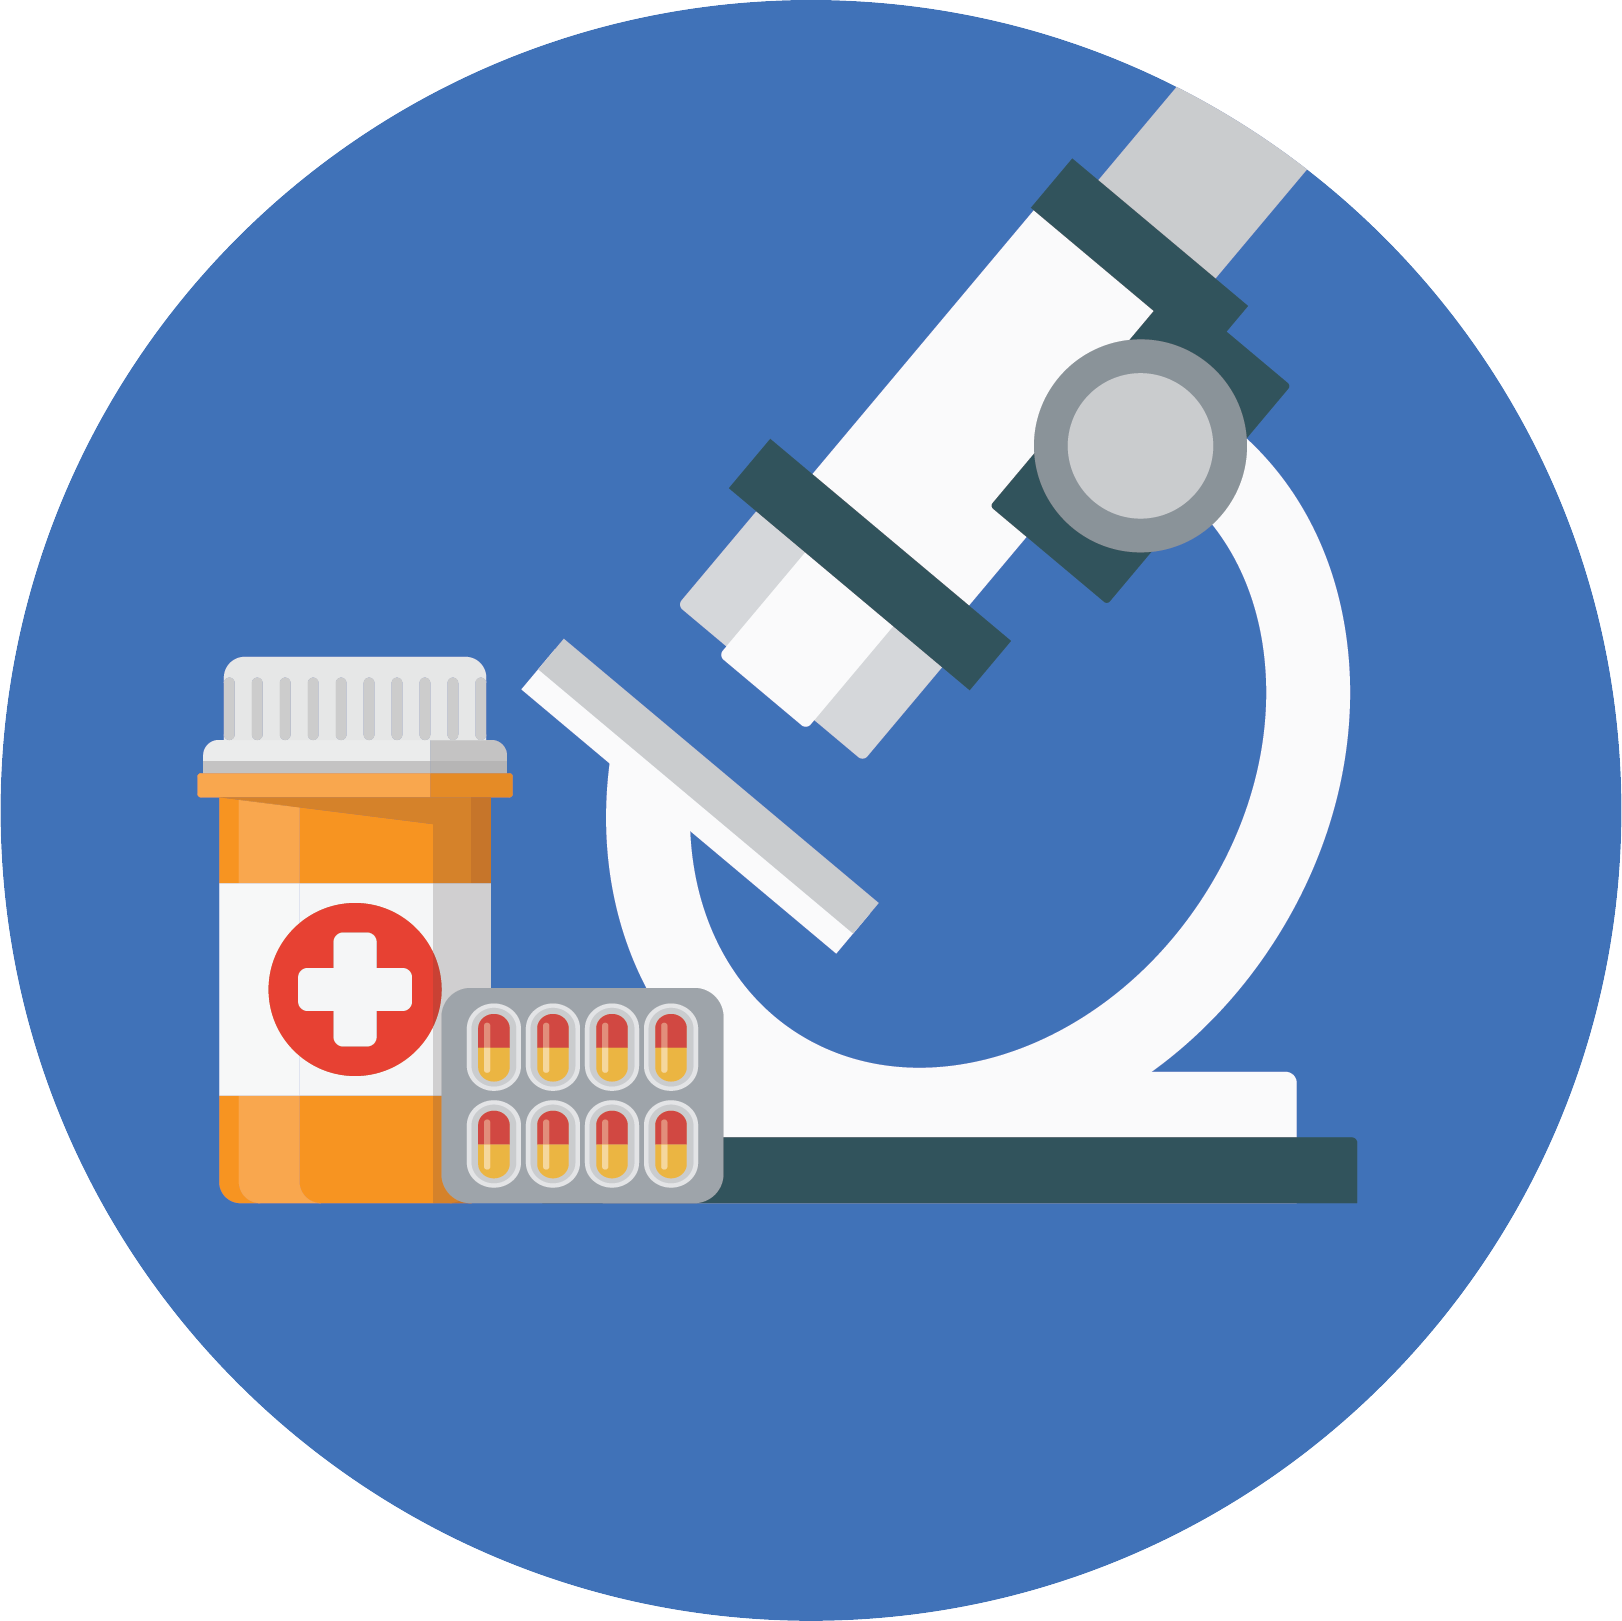 Microscope prescription drugs icon